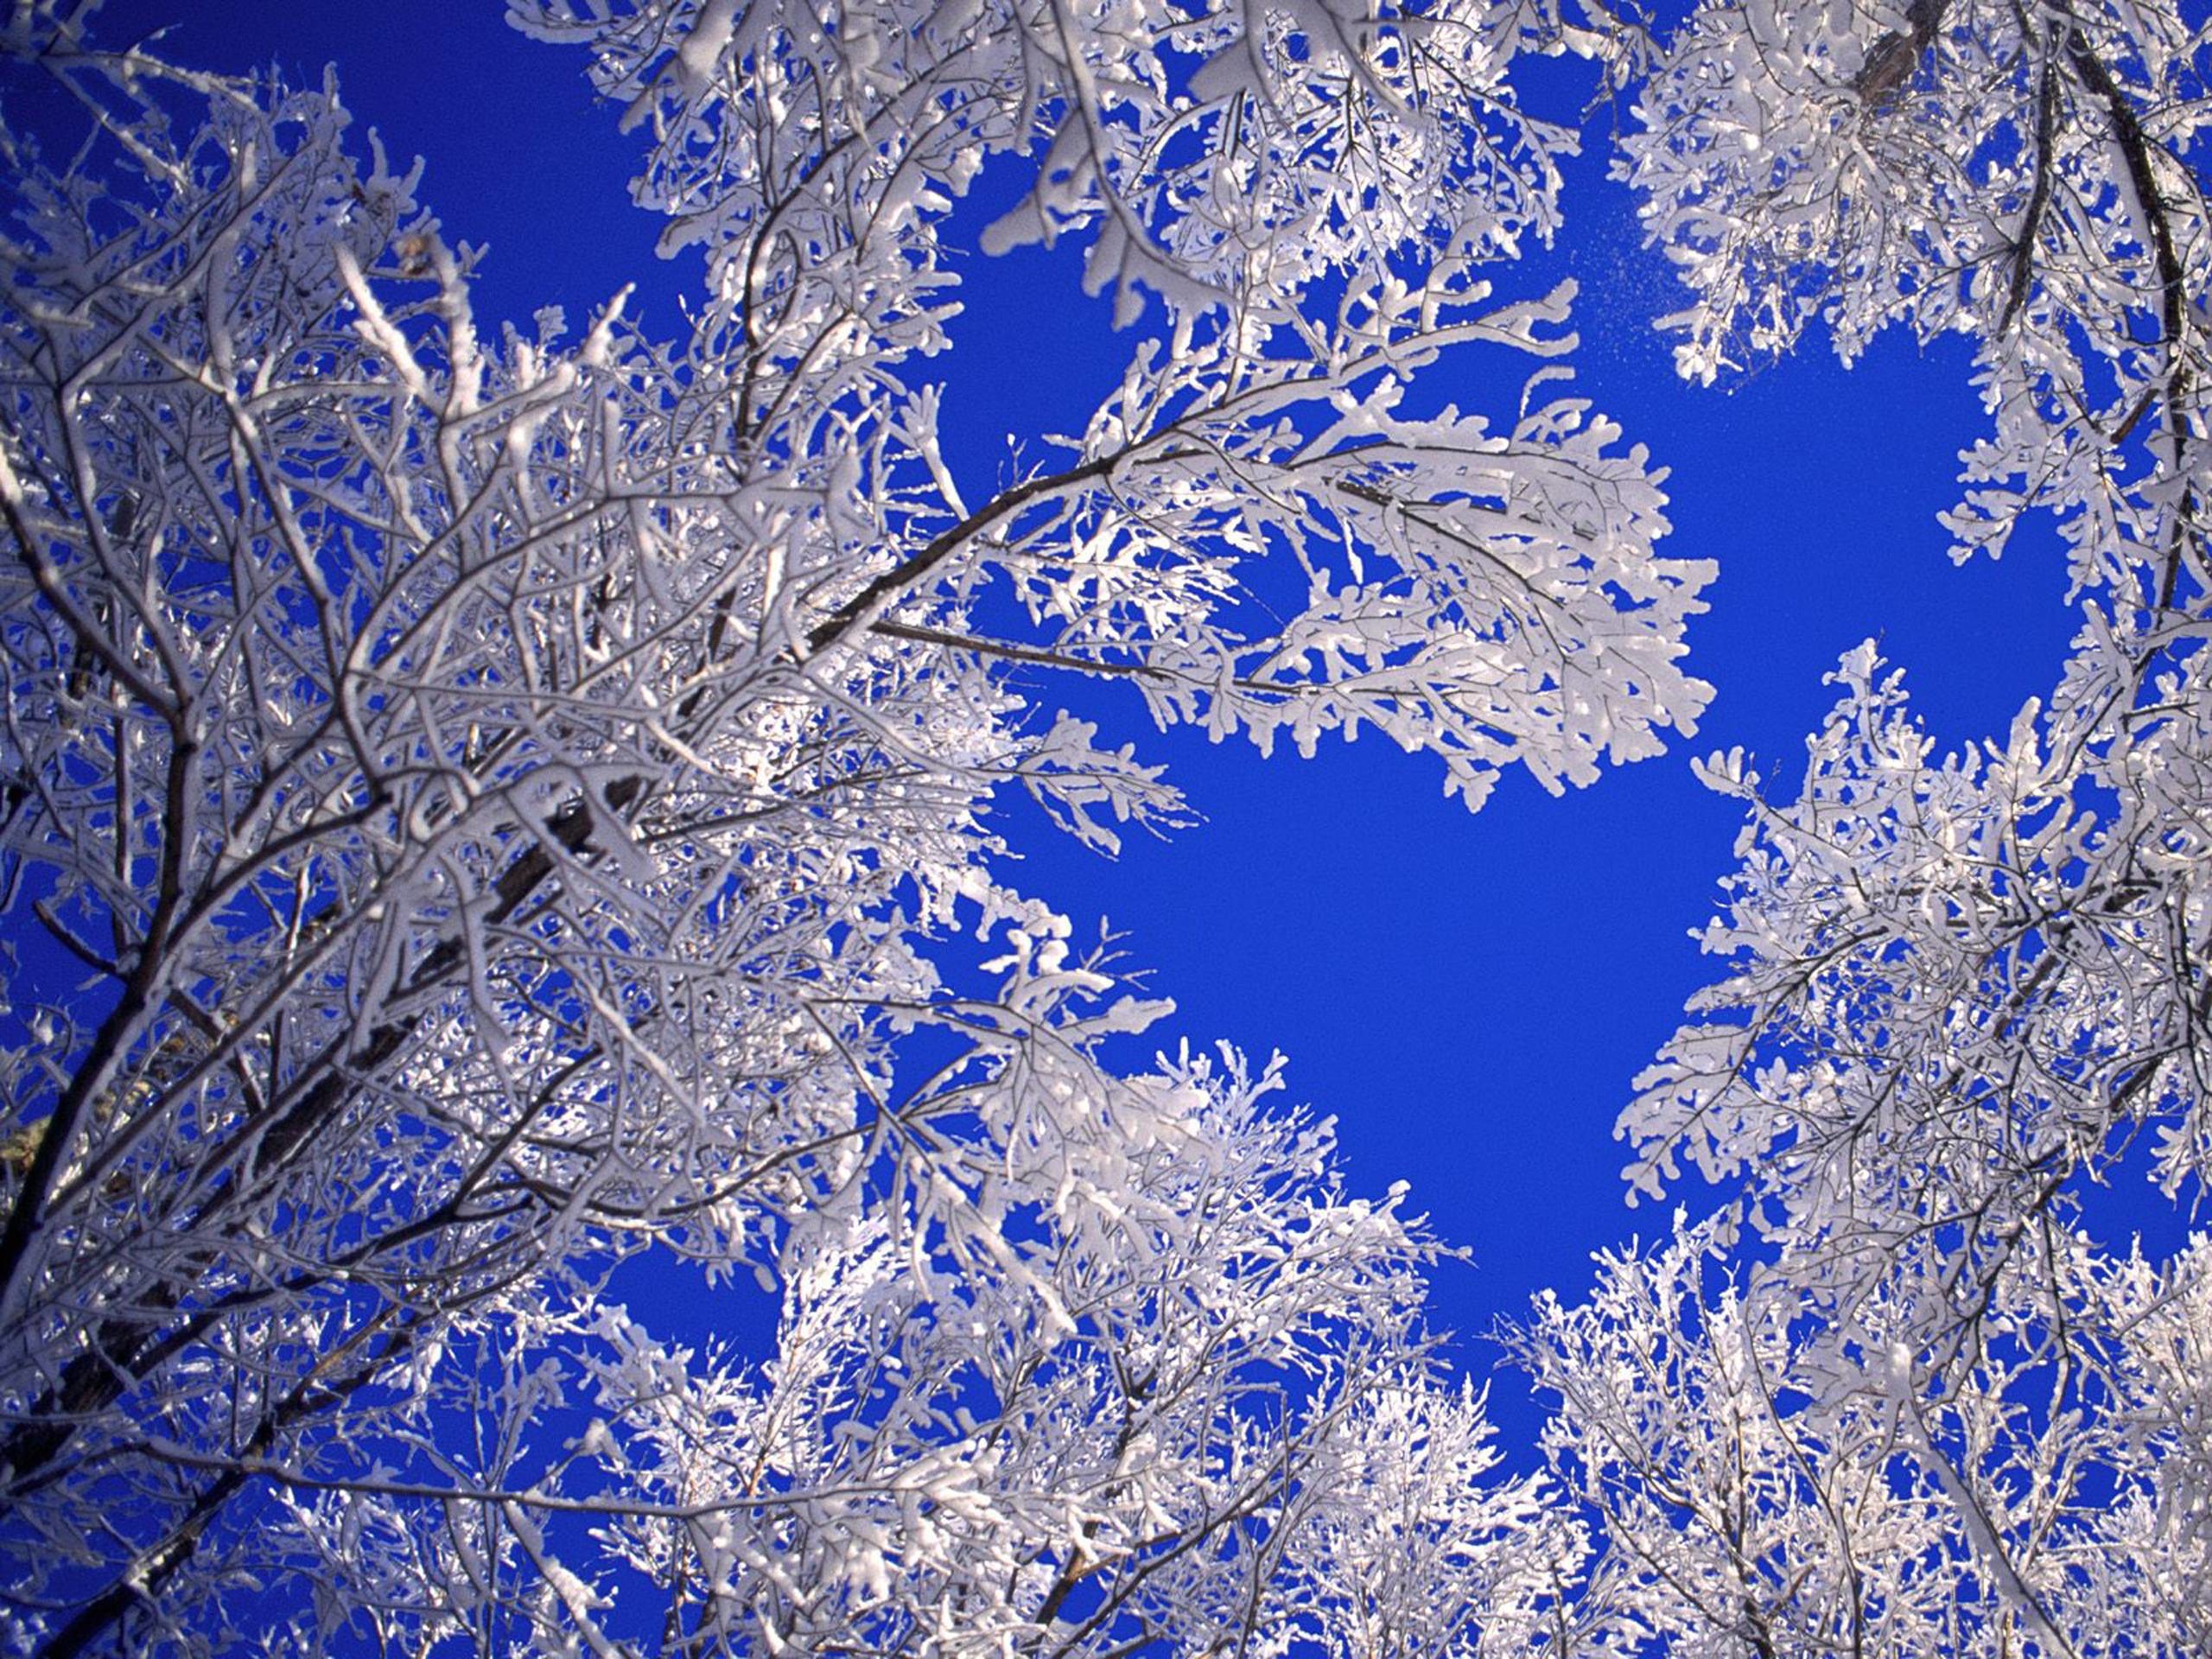 2560x1920 desktop wallpaper winter scenes - www.